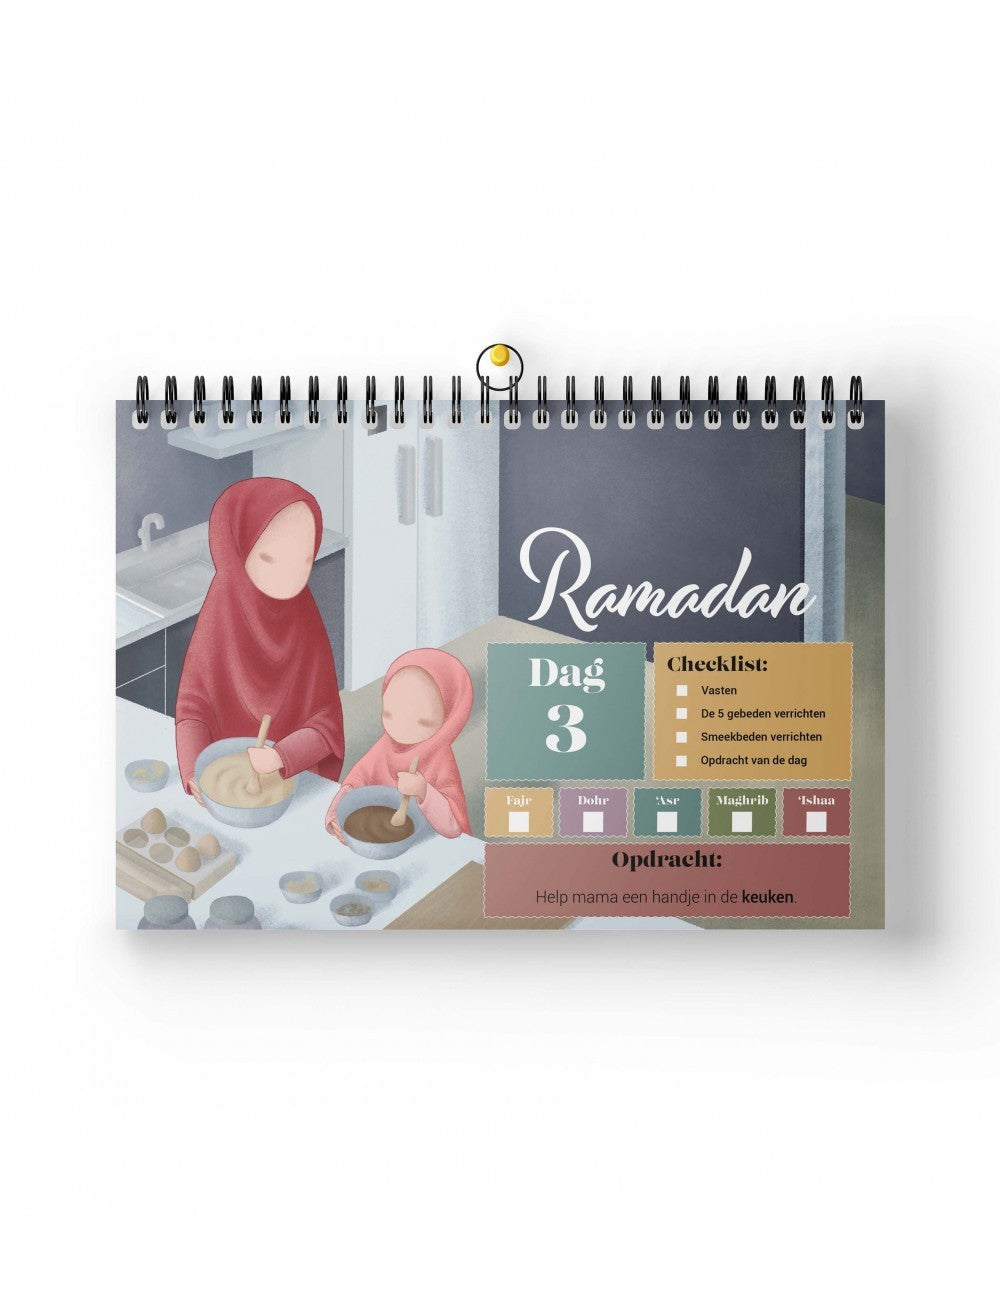 Ramadan Kalender voor Kids